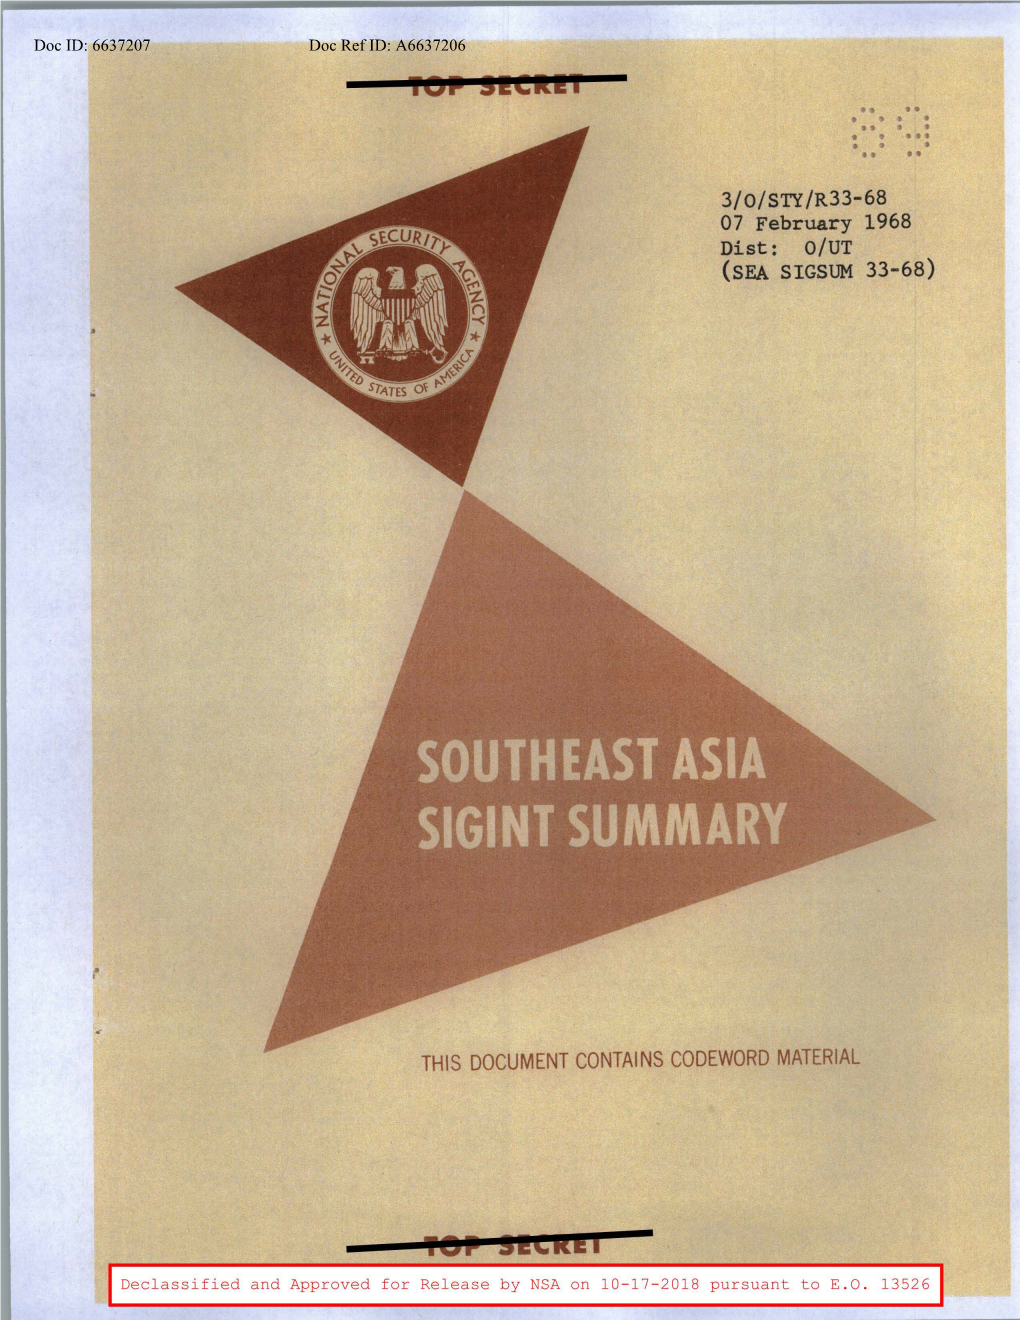 Southeast Asia SIGINT Summary, 7 February 1968